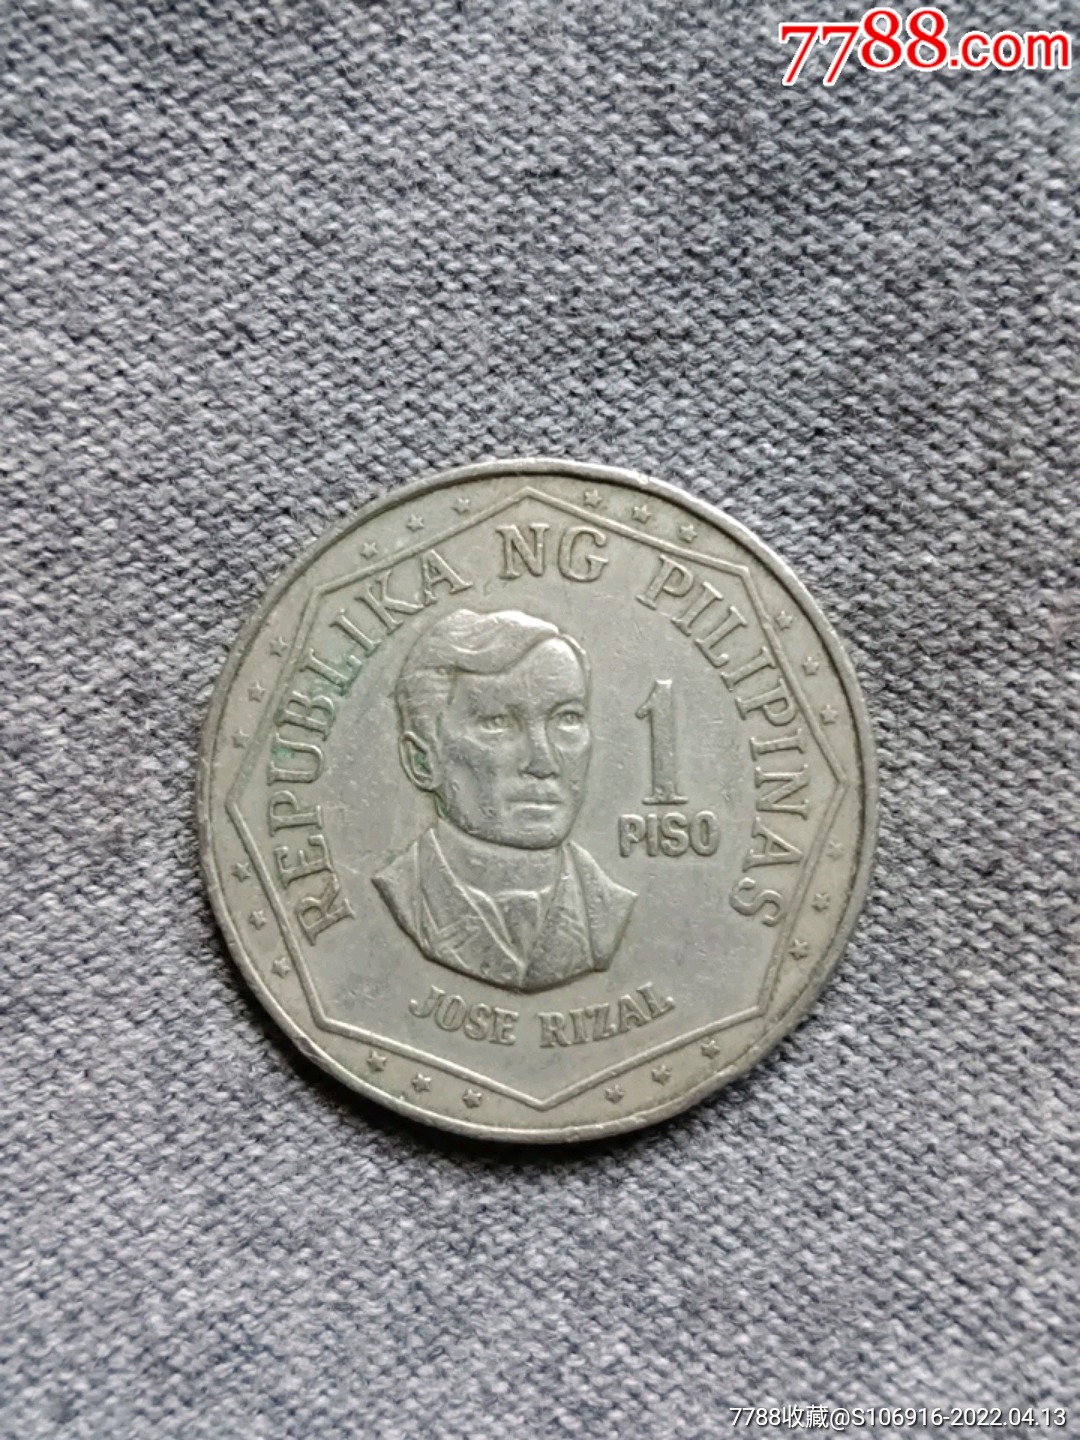 1975年菲律宾1比索